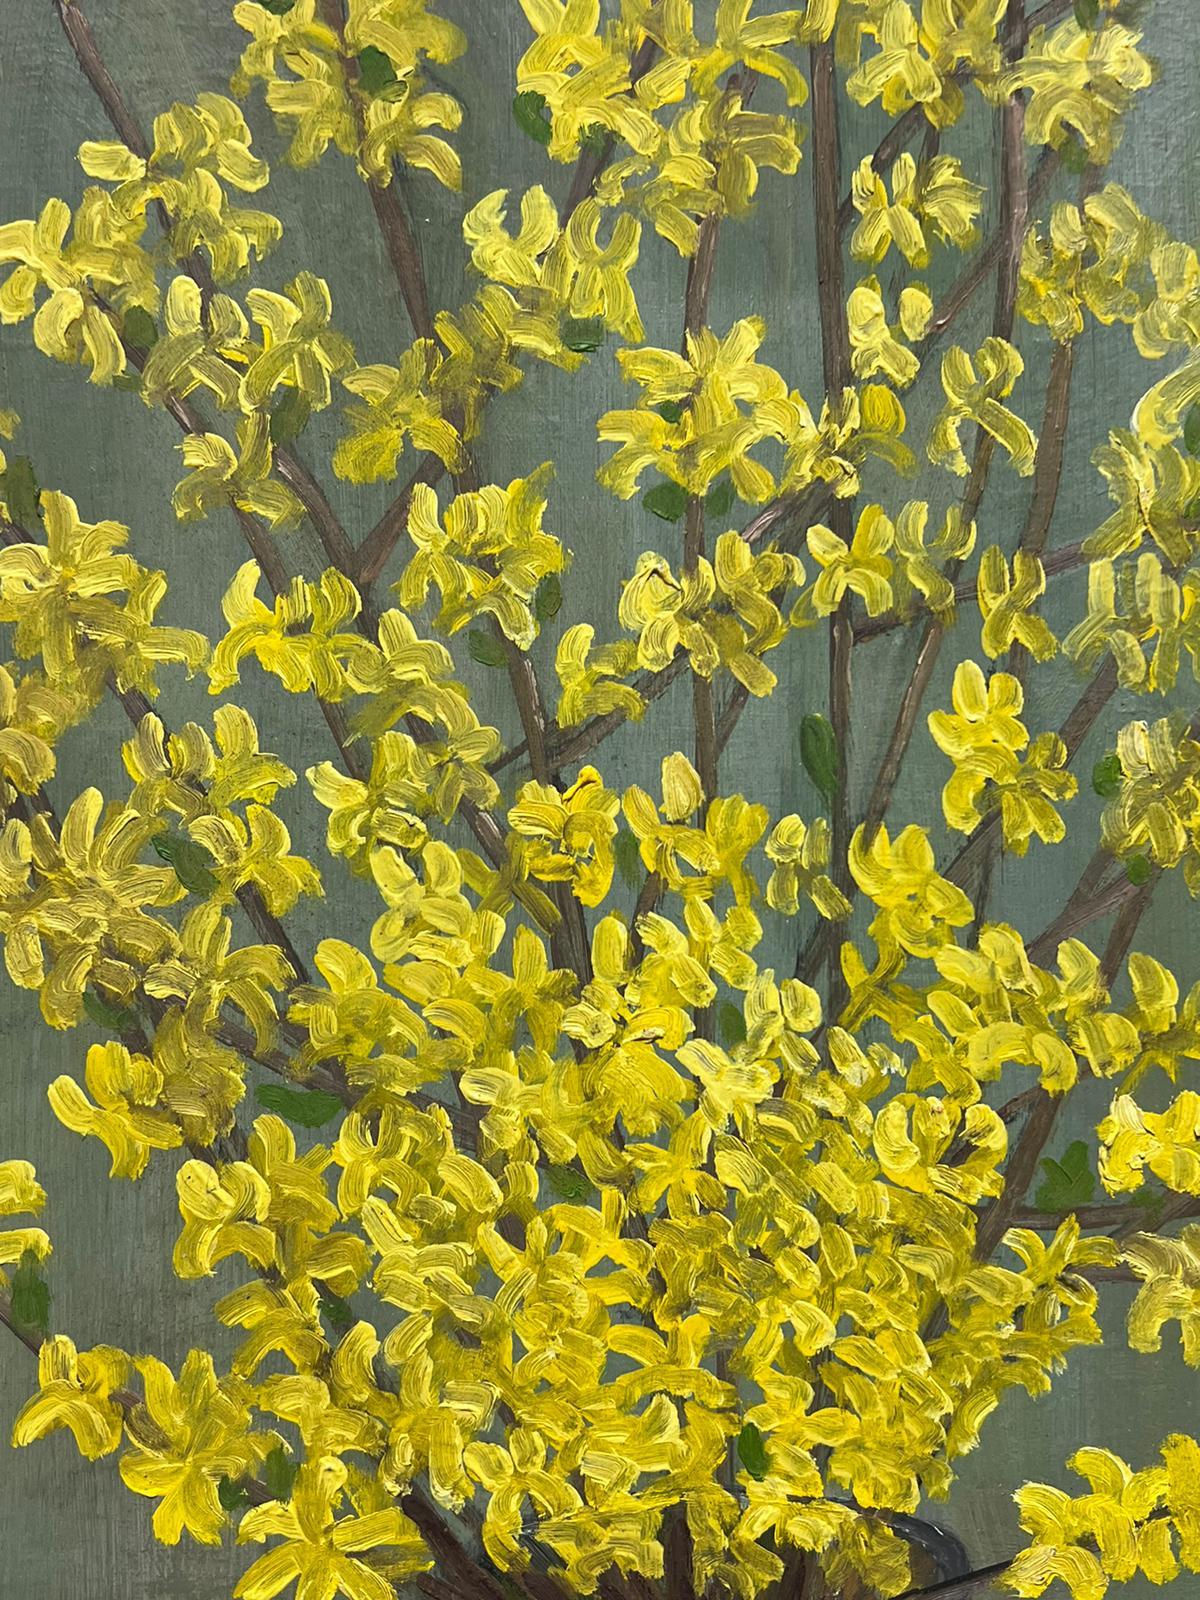 Forsythia jaune
de Louise Alix (française, 1888-1980) *voir notes ci-dessous
cachet de provenance au dos 
peinture à l'huile sur toile, non encadrée
mesure : 24 pouces de haut par 13 pouces de large
état : globalement très bon et sain, quelques